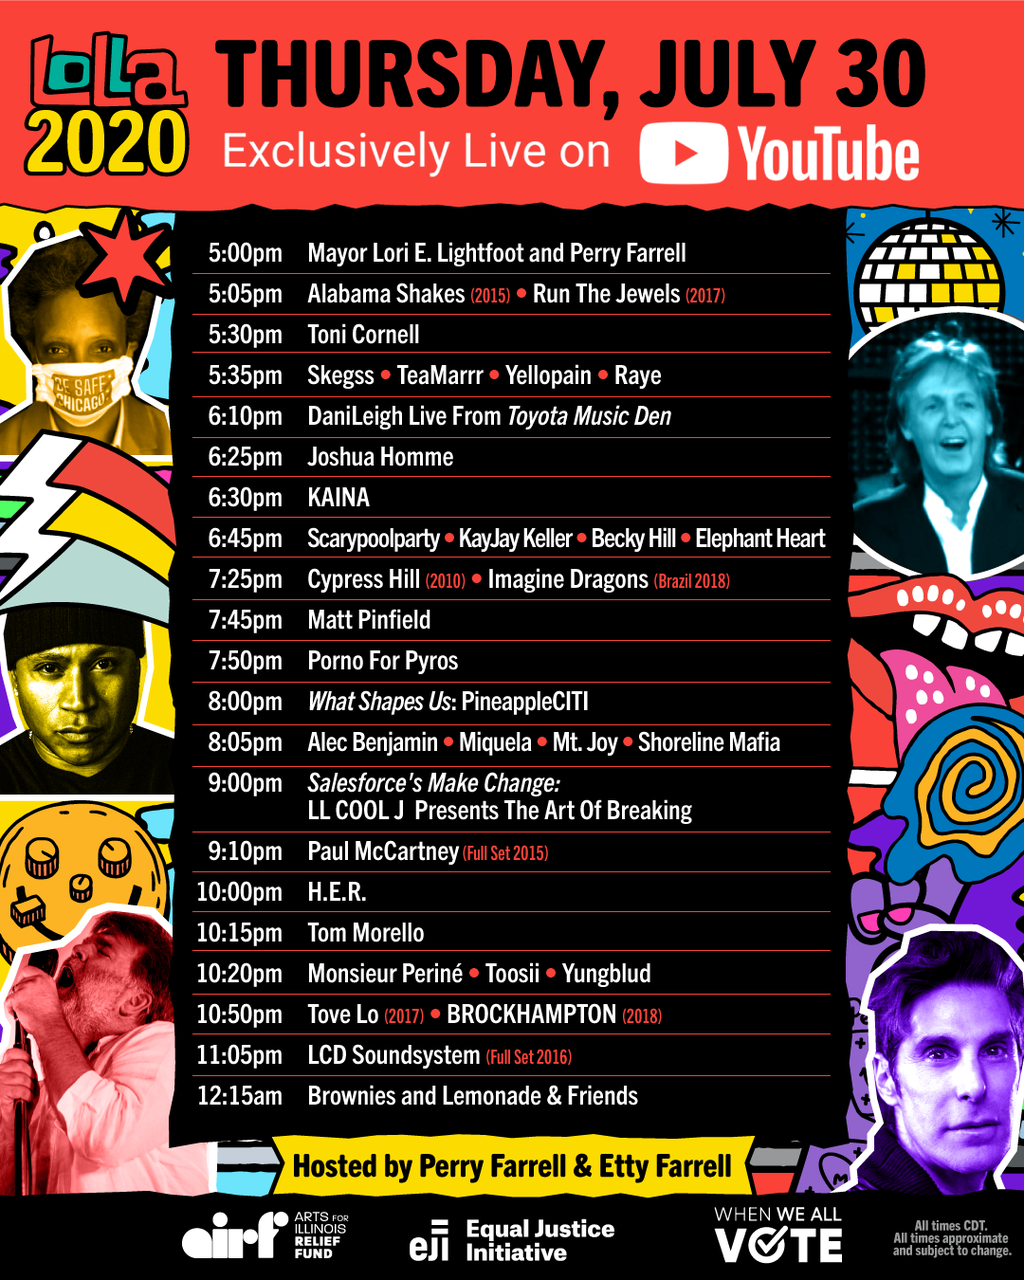 Já começou! Confira a agenda e saiba como assistir ao Lollapalooza 2020 online